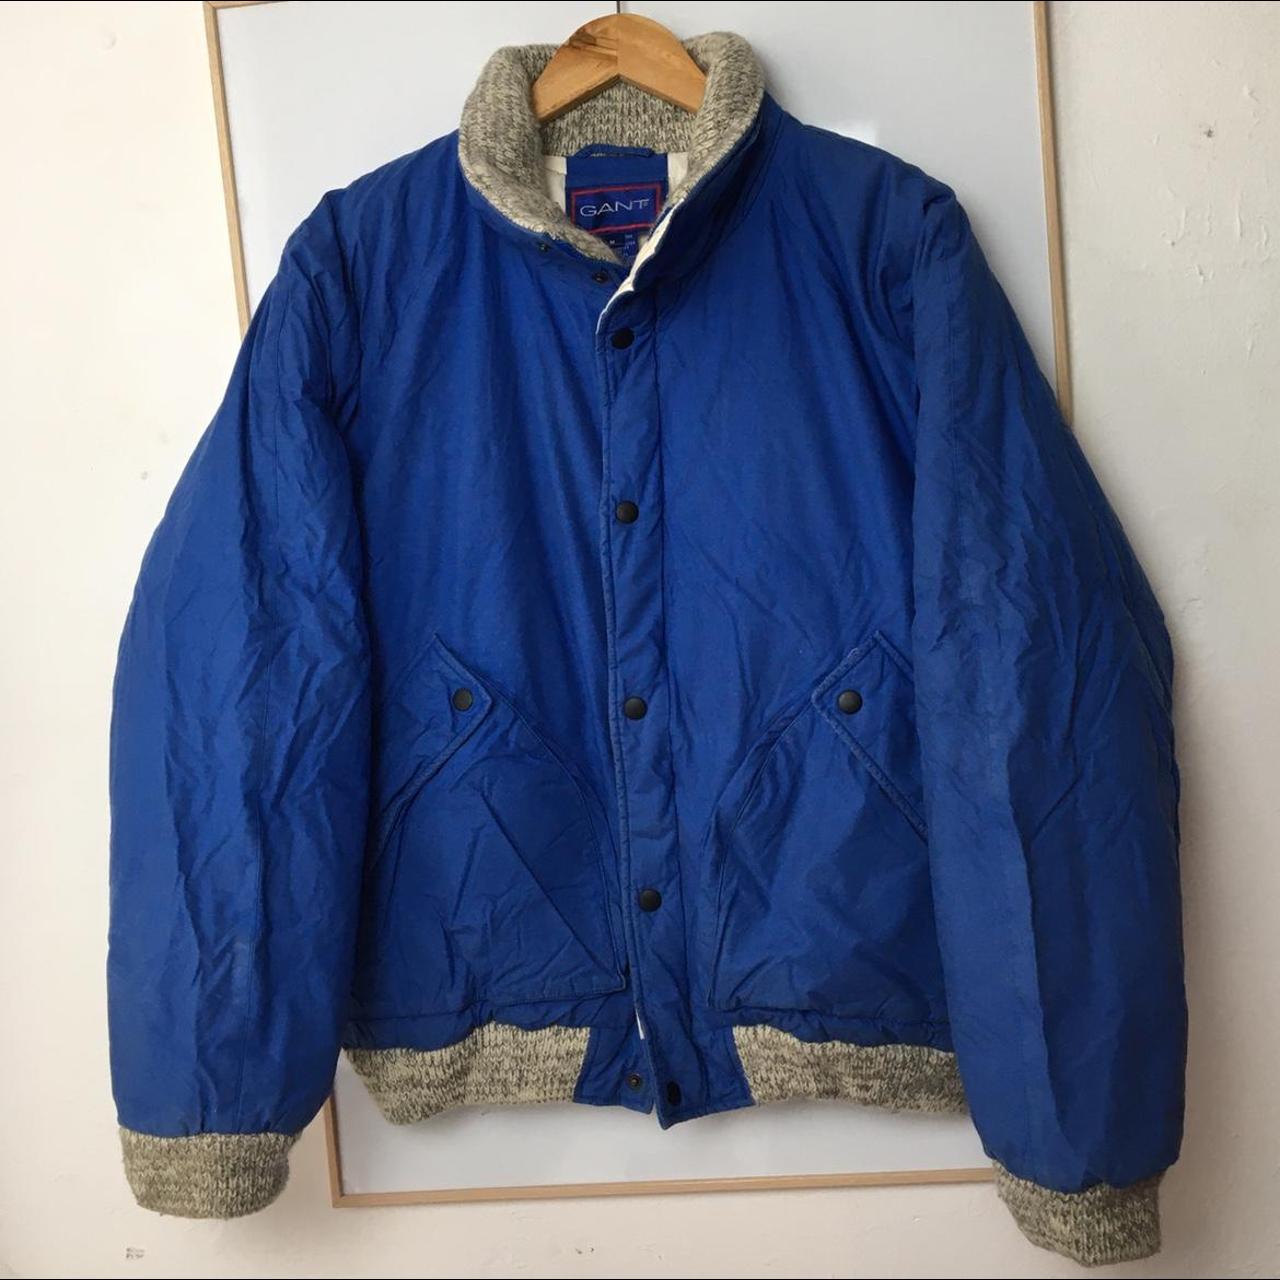 Vintage 90s GANT Blue Puffer Jacket Awesome GANT... - Depop